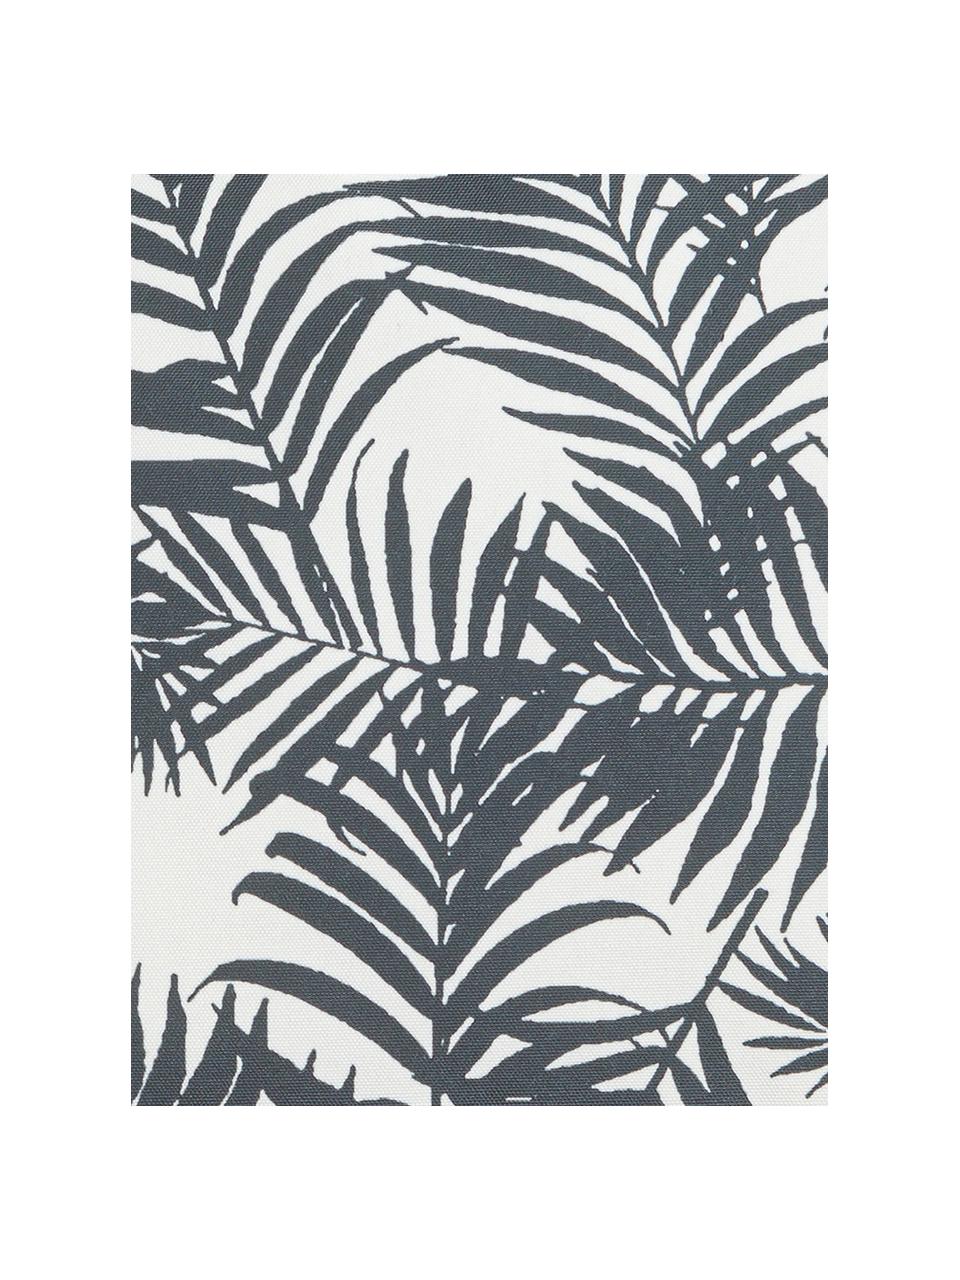 Outdoor-Kissen Gomera mit Blattmuster, mit Inlett, 100% Polyester, Weiß, Schwarz, B 45 x L 45 cm